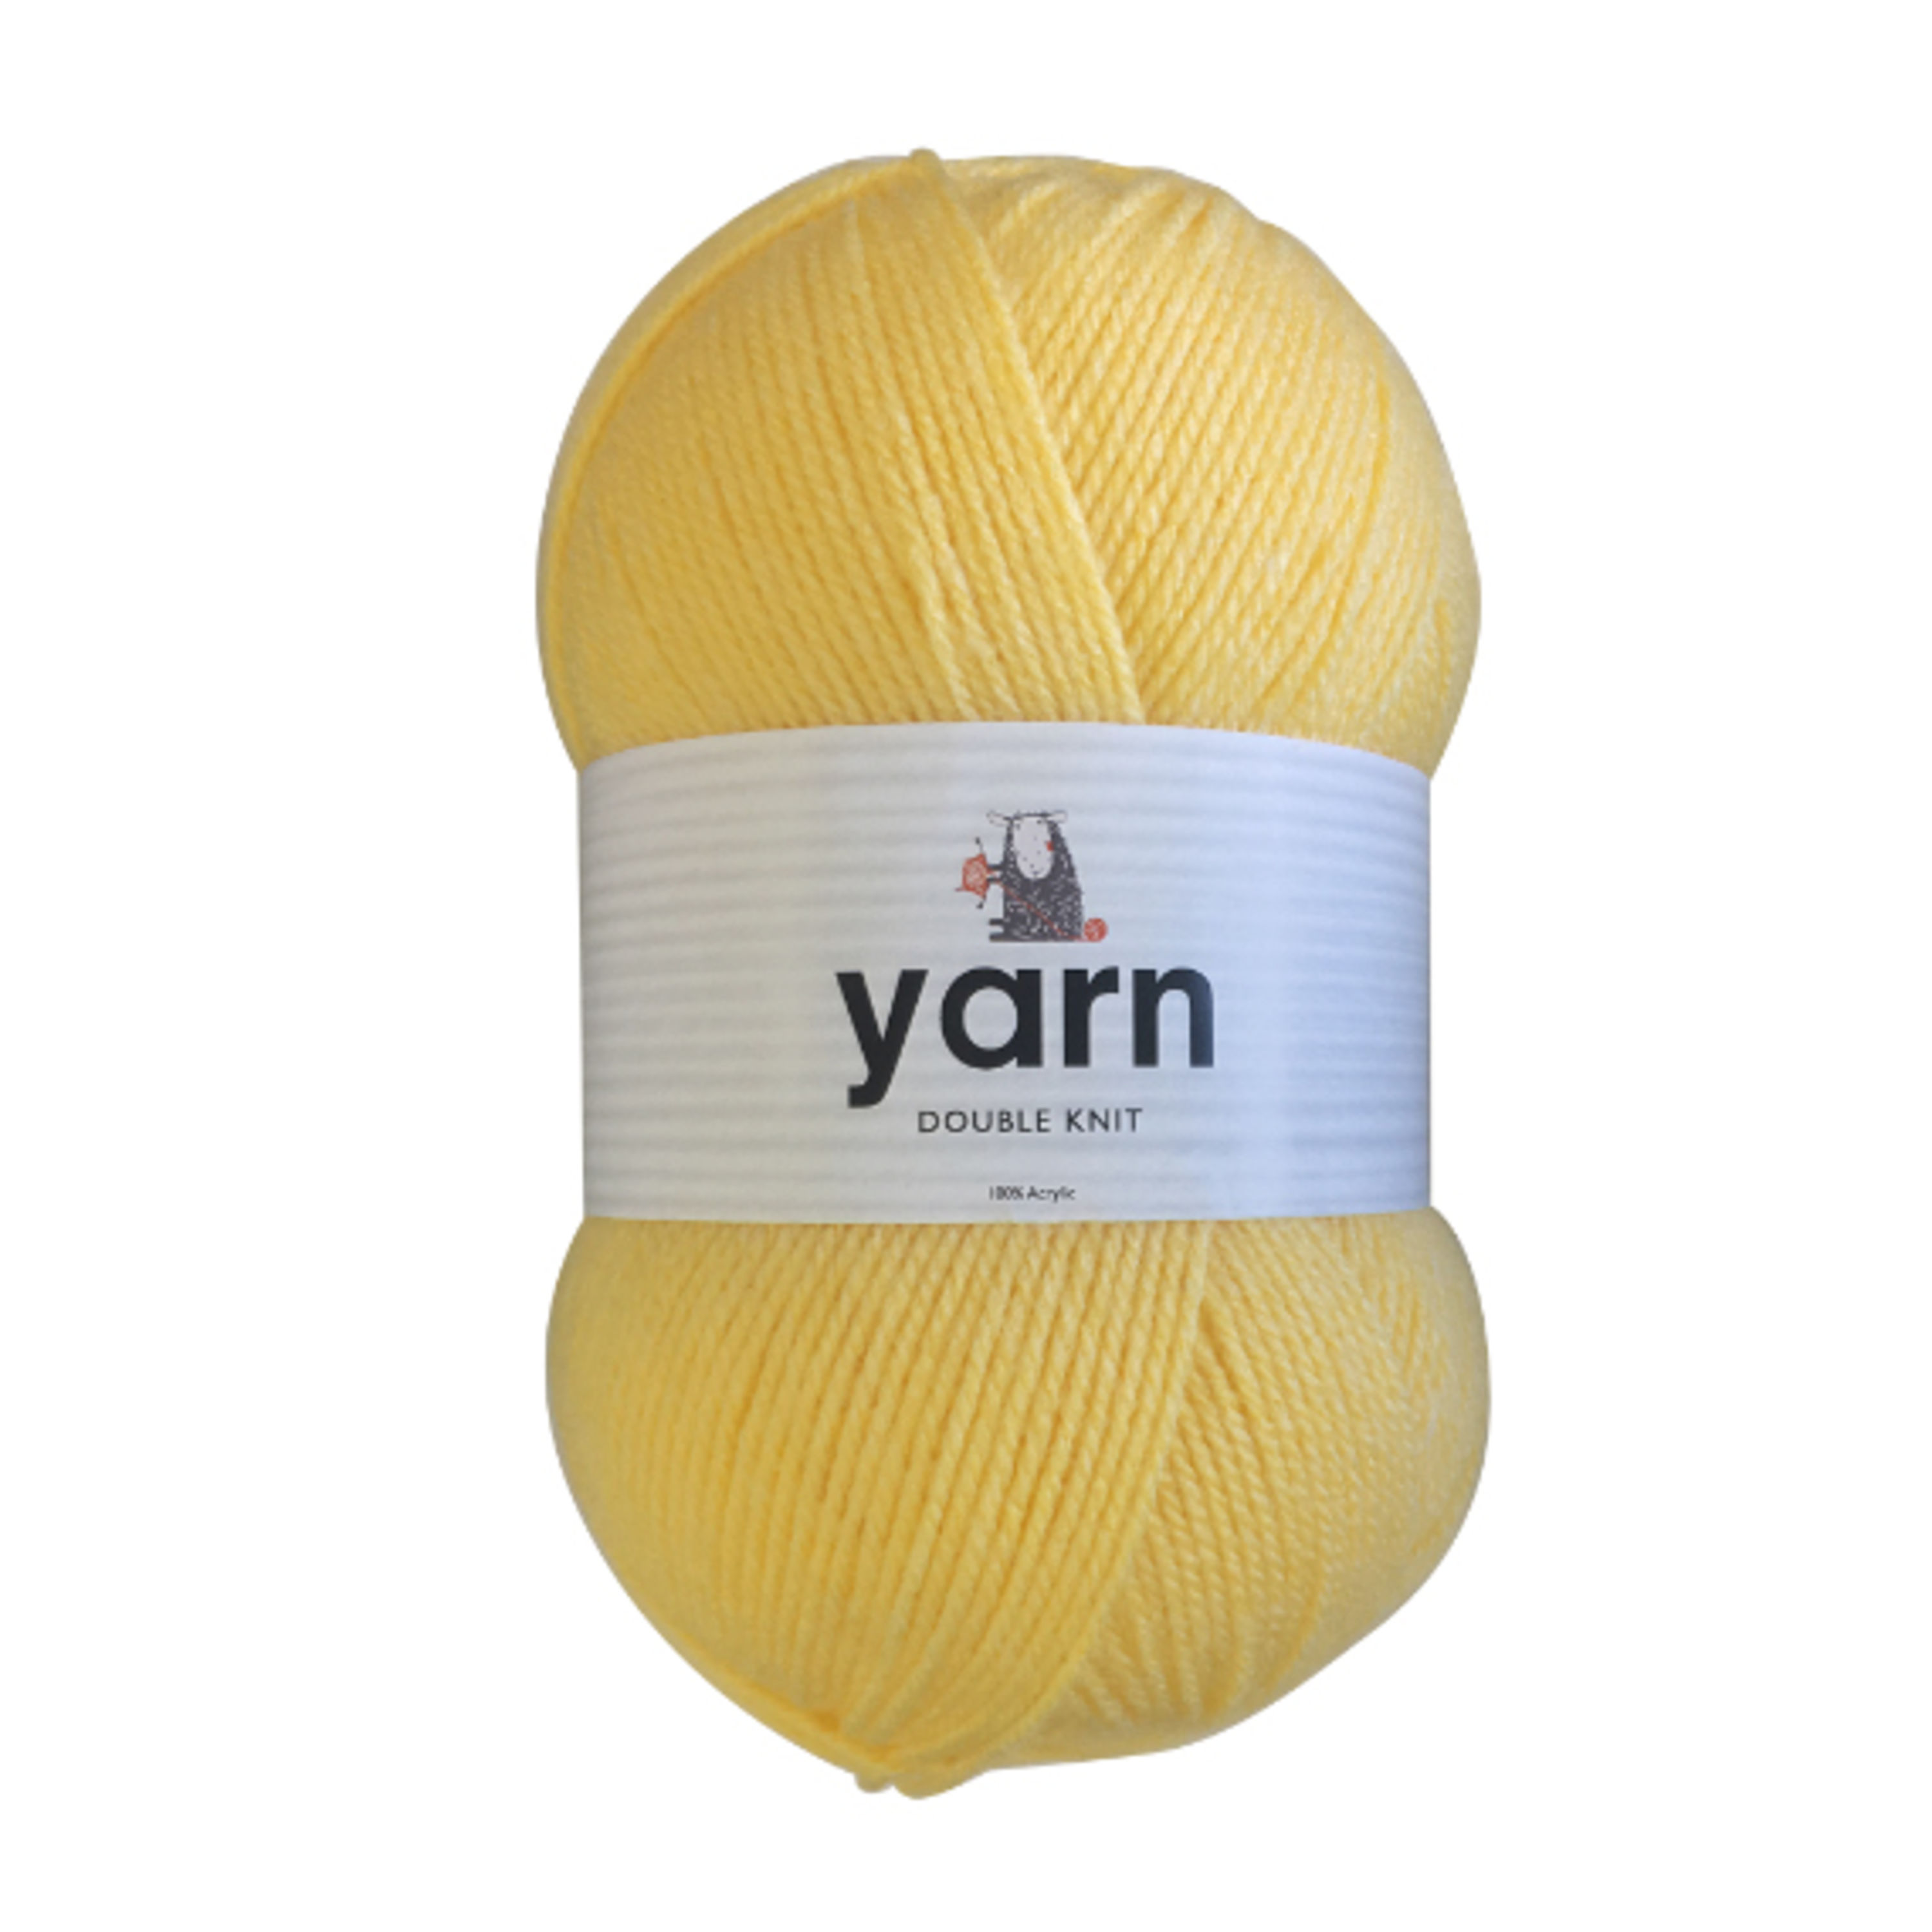 100g Light Yellow Double Knit Yarn